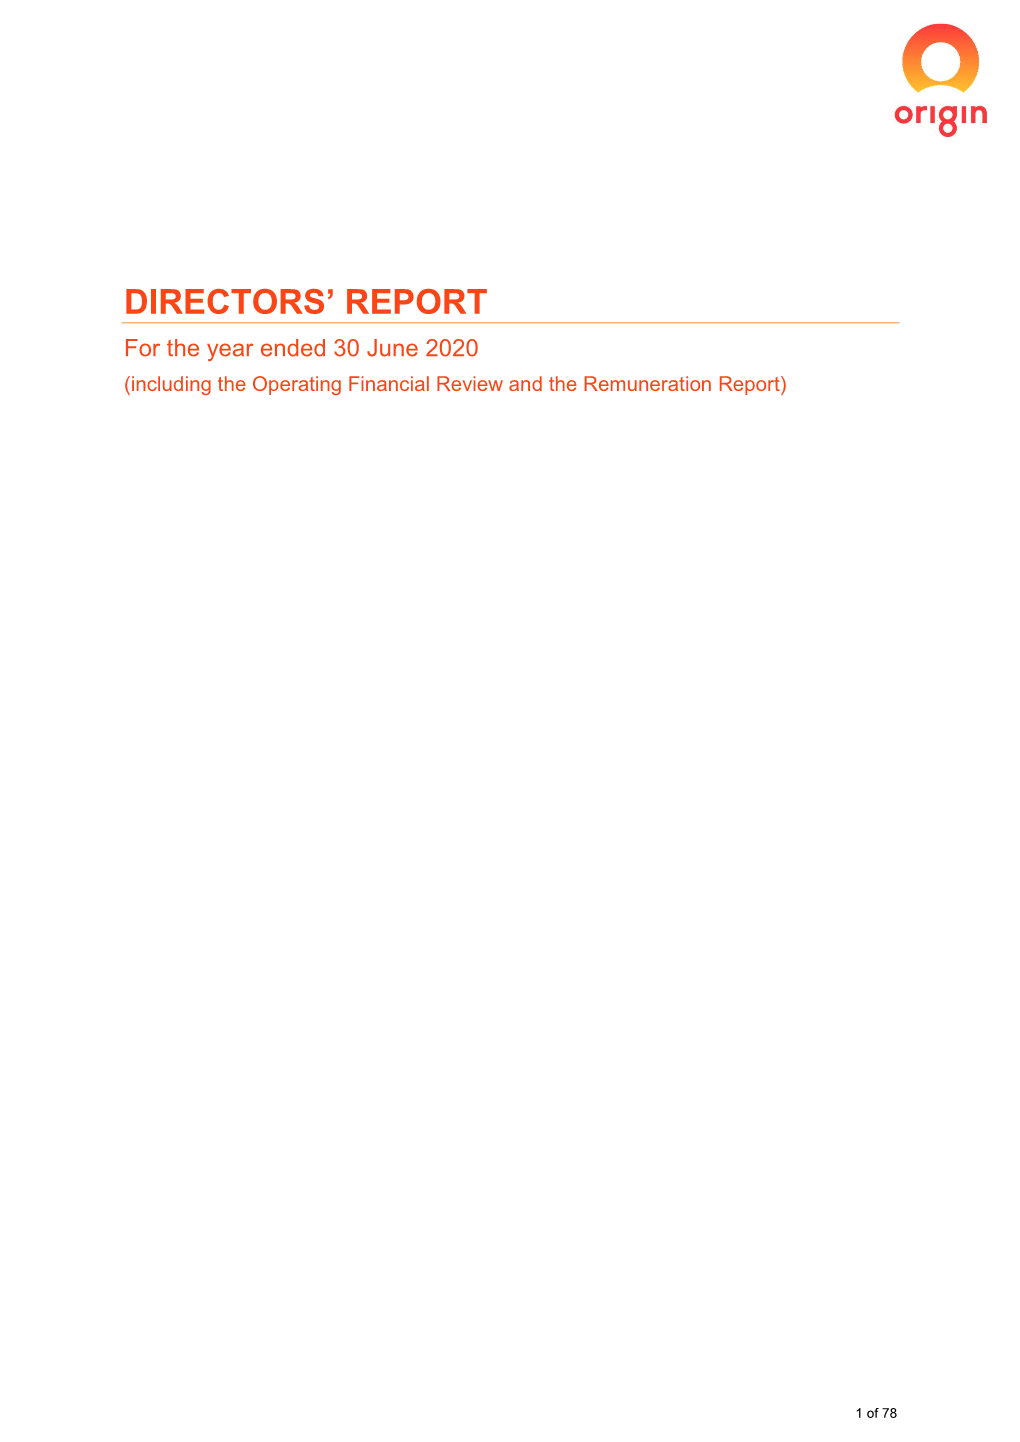 Directors' Report